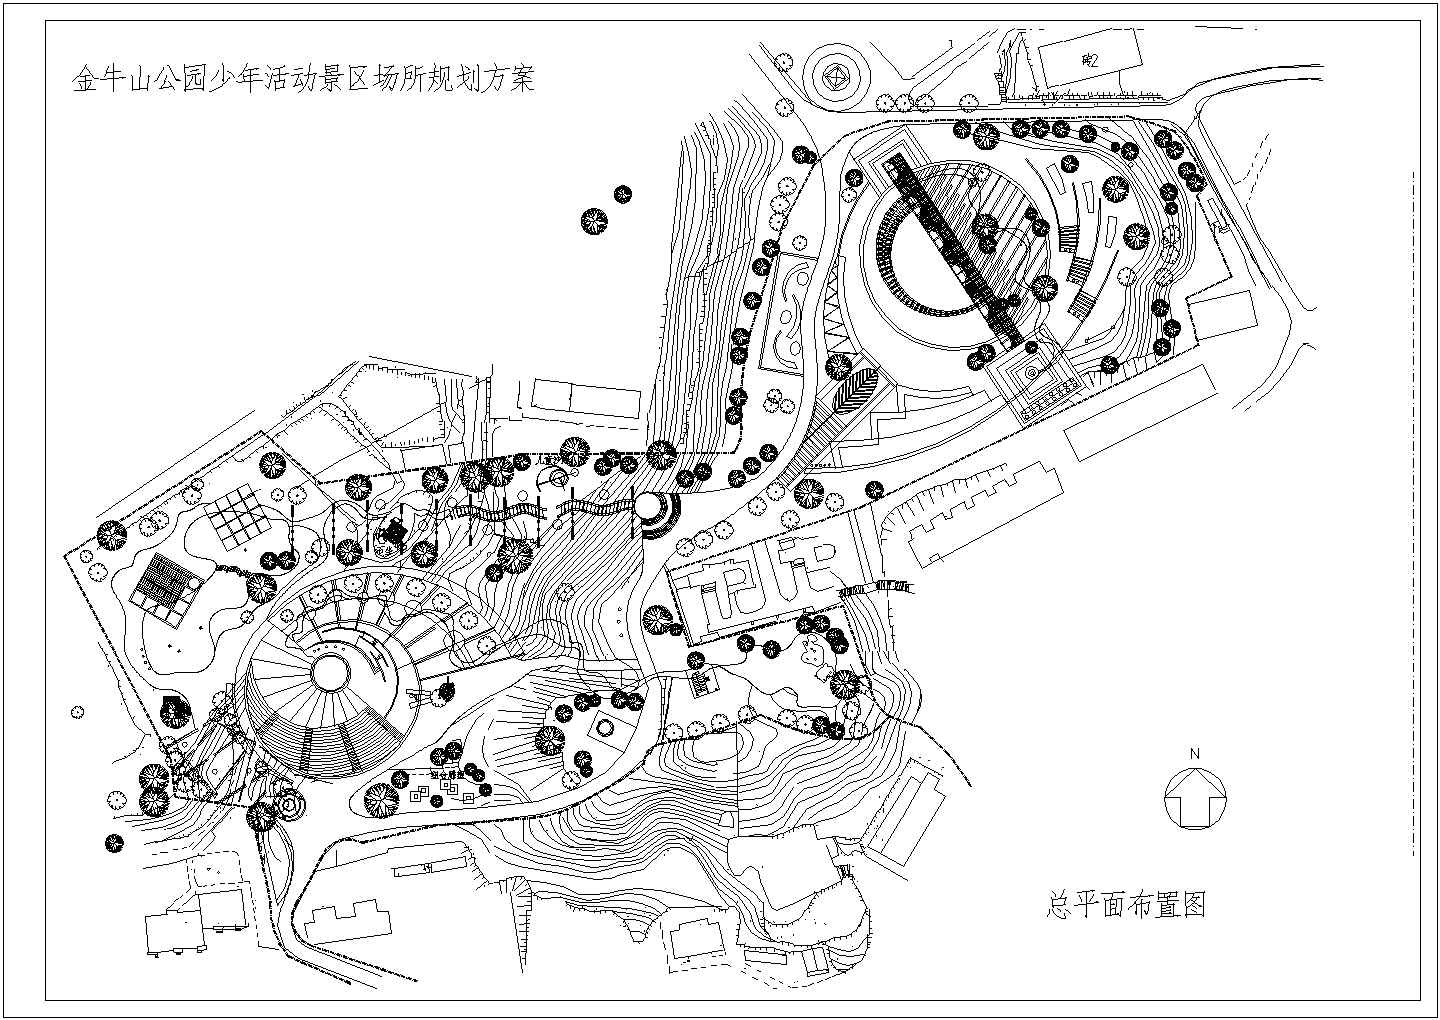 某开放式公园CAD全套景观设计完整规划图